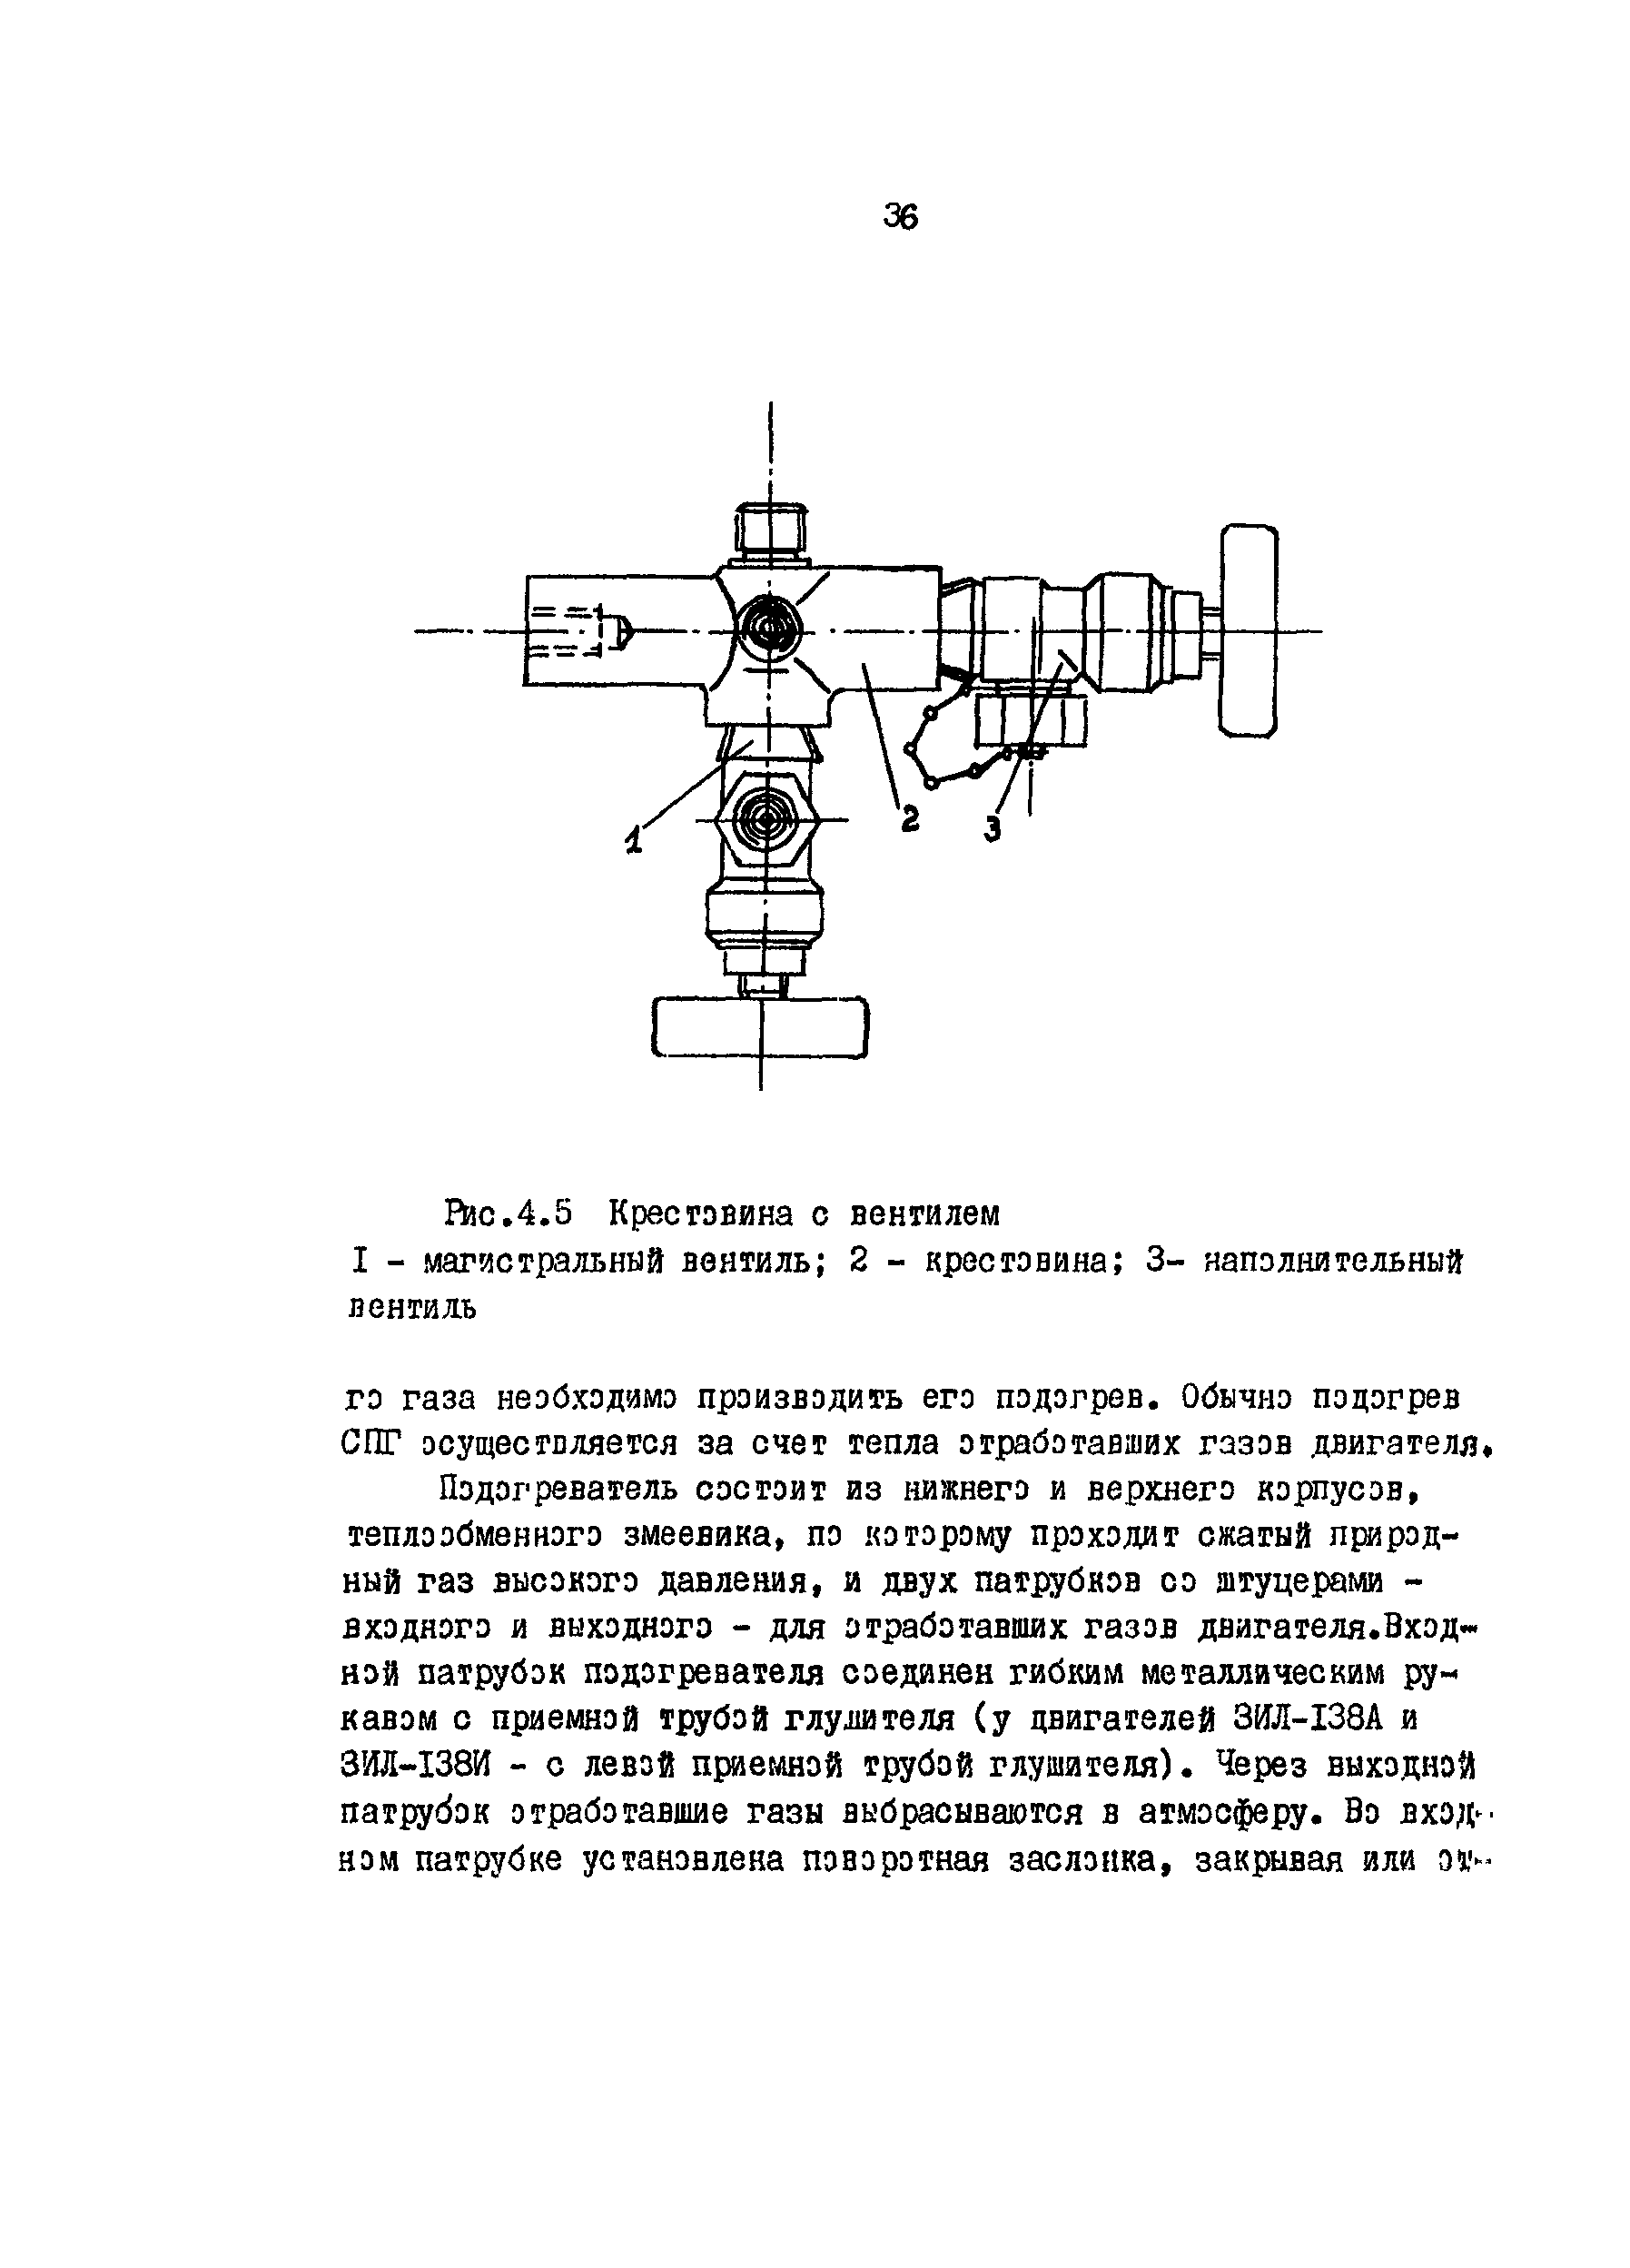 РД 200-РСФСР-12-0185-83